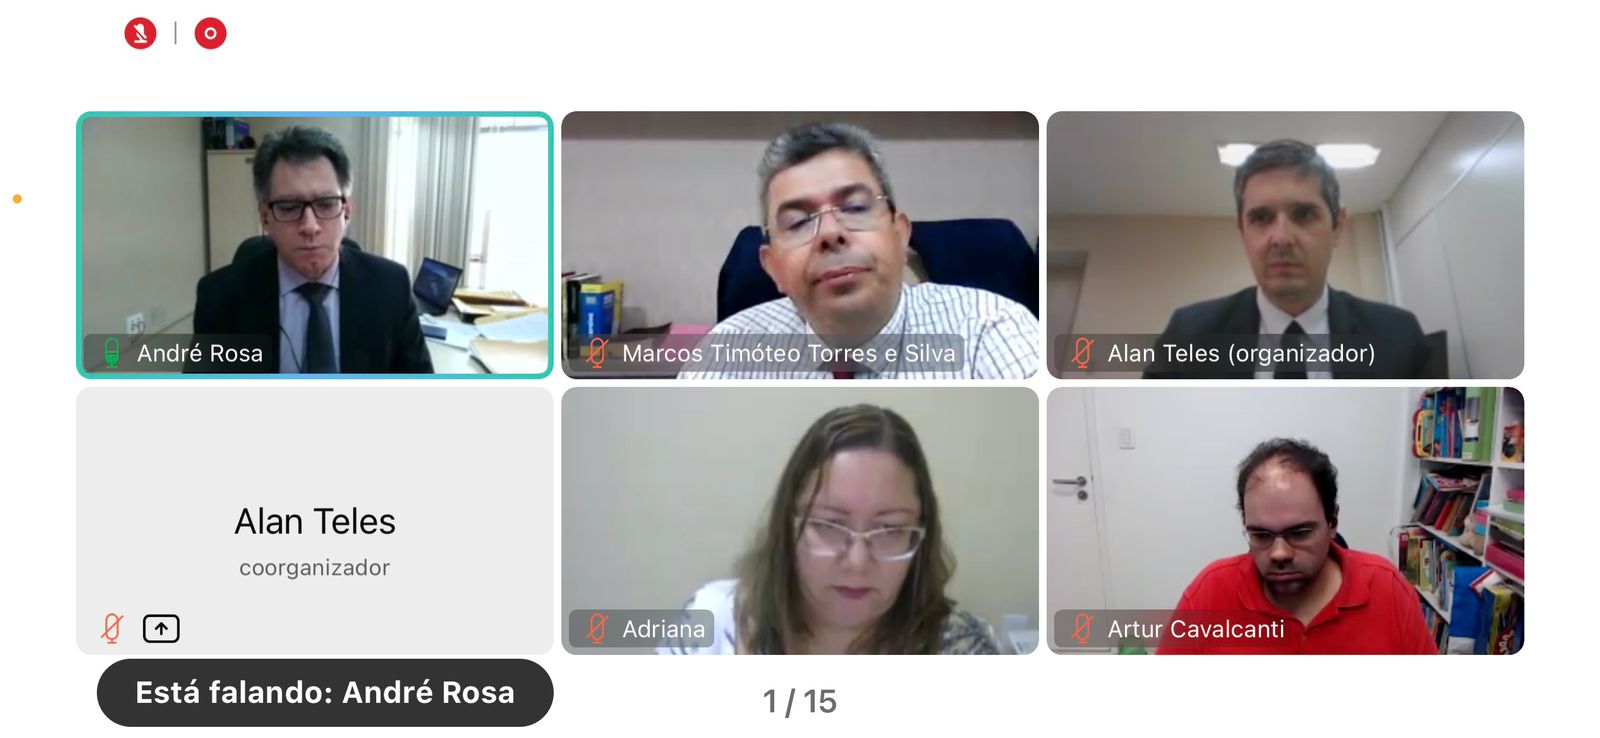 Imagem da tela da reunião com os participantes da reunião